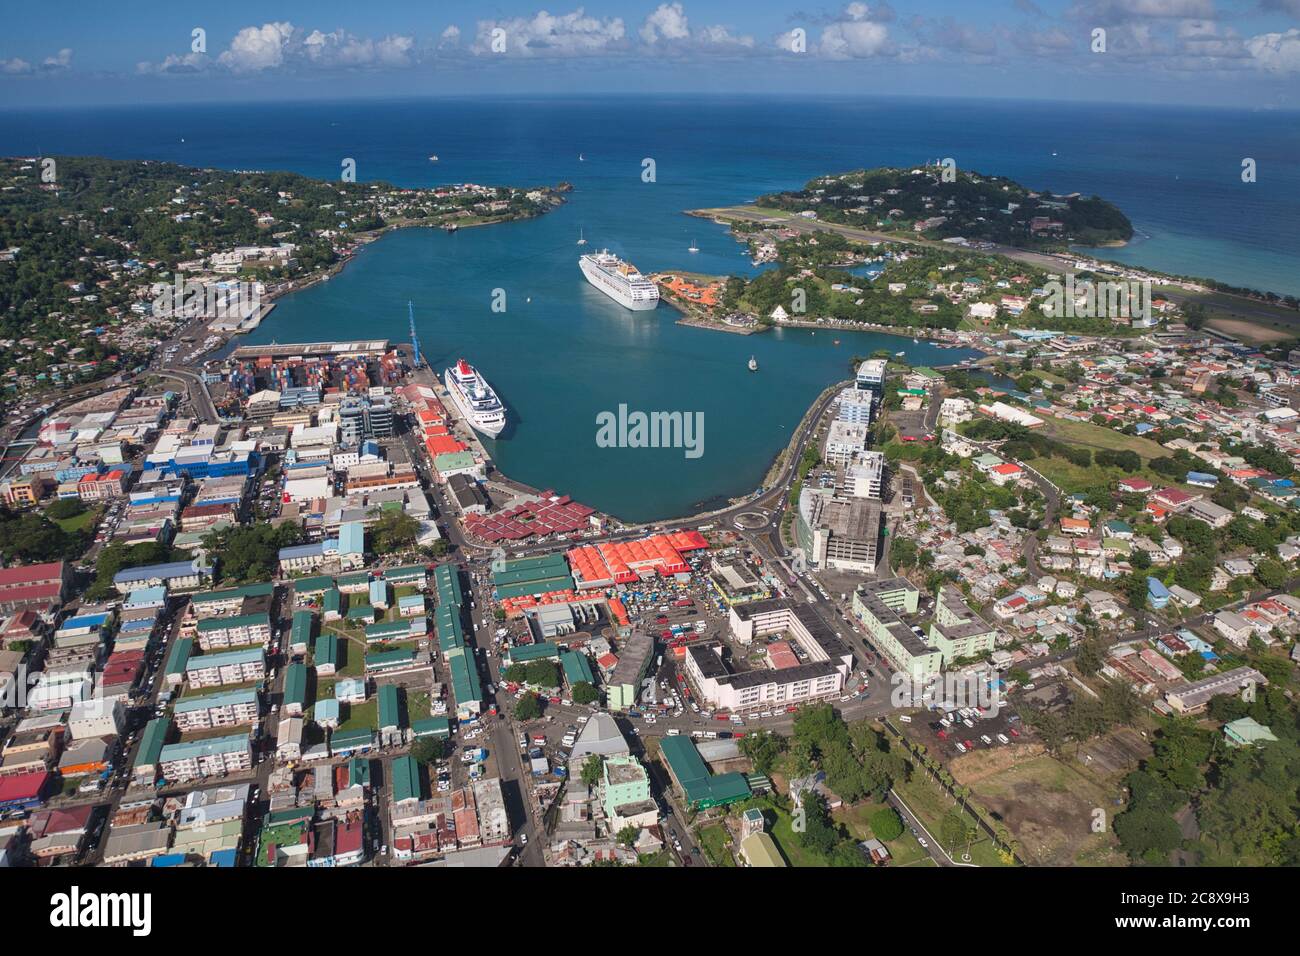 Castries, port et capitale de Sainte-Lucie dans les Caraïbes, Antilles. Vue aérienne des rues, des bâtiments et des deux bateaux de croisière avec l'aéroport en haut à droite Banque D'Images